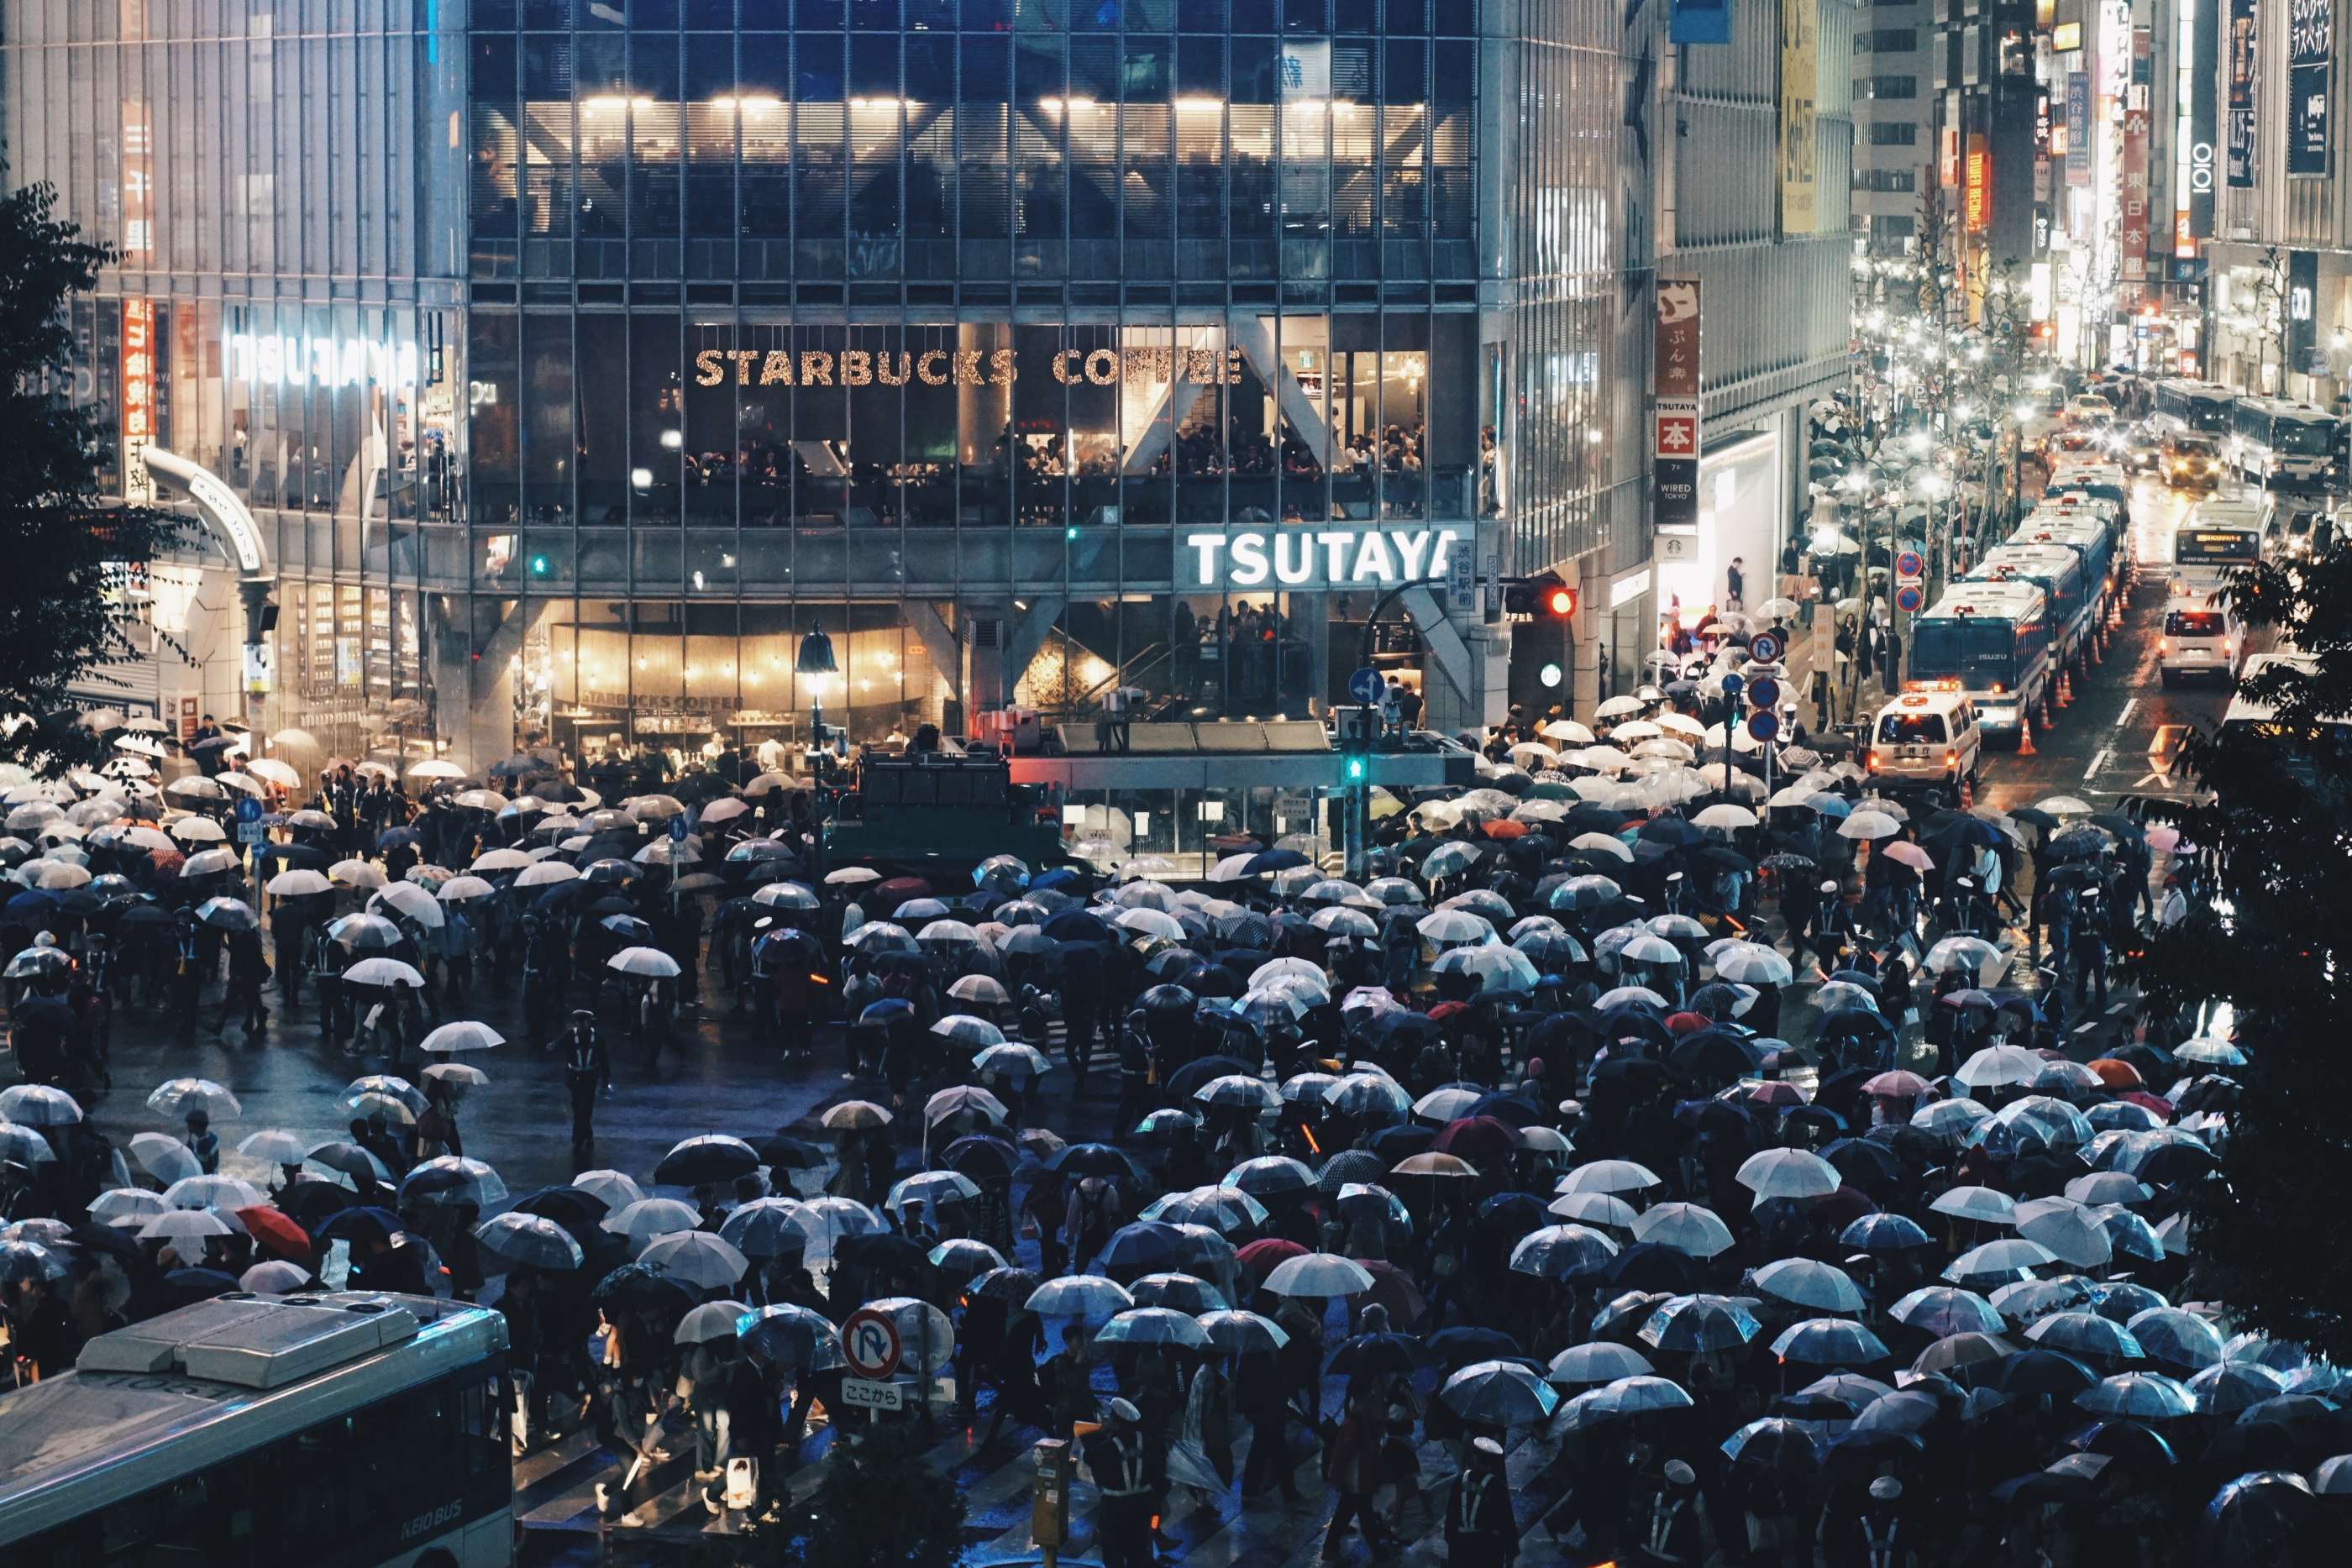 Menschen bei Regen in Shibuya, Tokio JP/ Finan Akbar CC0 Unsplash